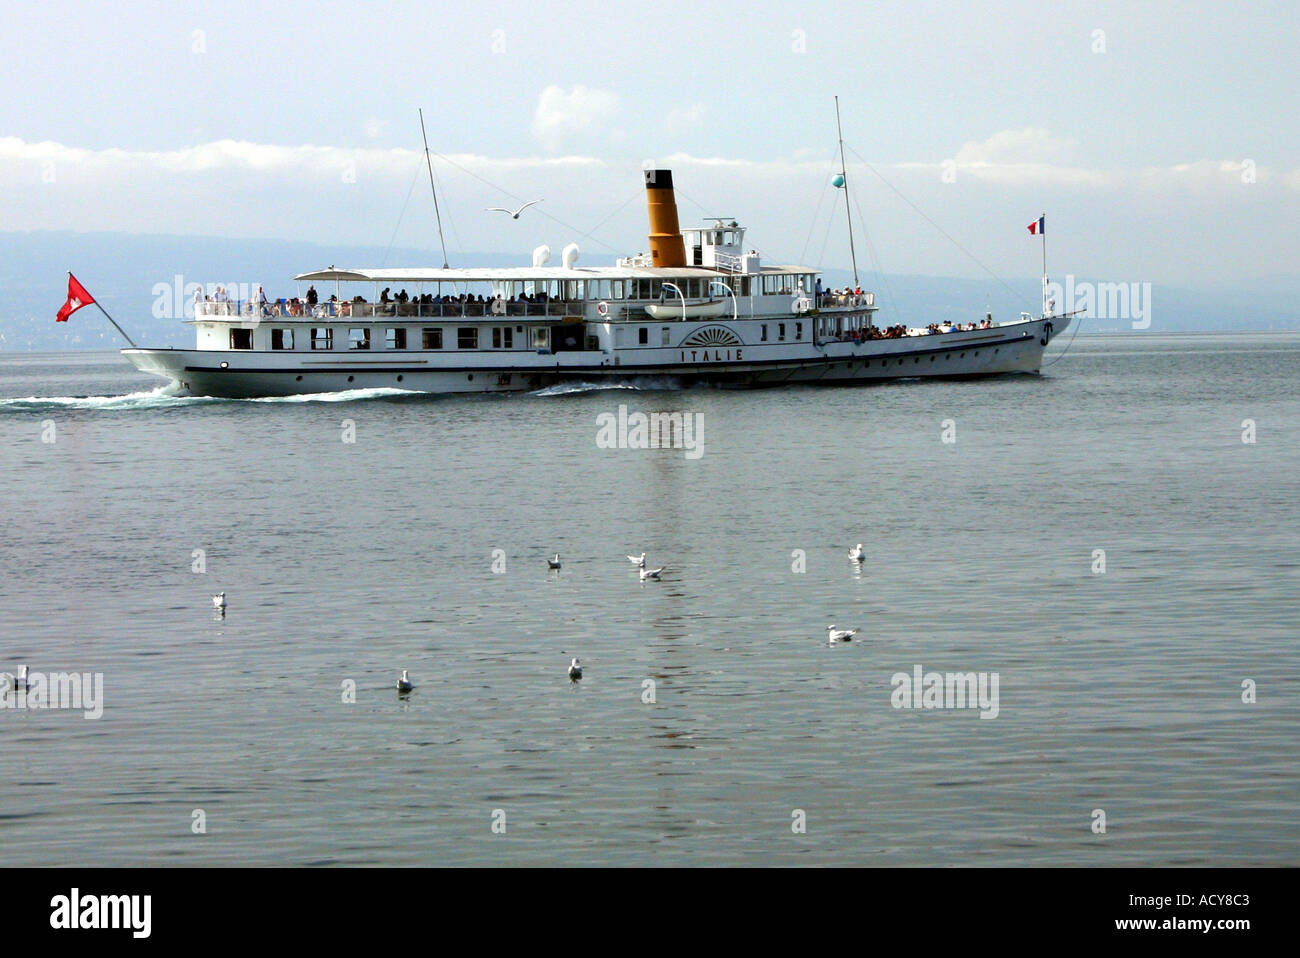 La Italie barco de vapor en el lago de Ginebra fuera de Lausanne Suiza Foto de stock